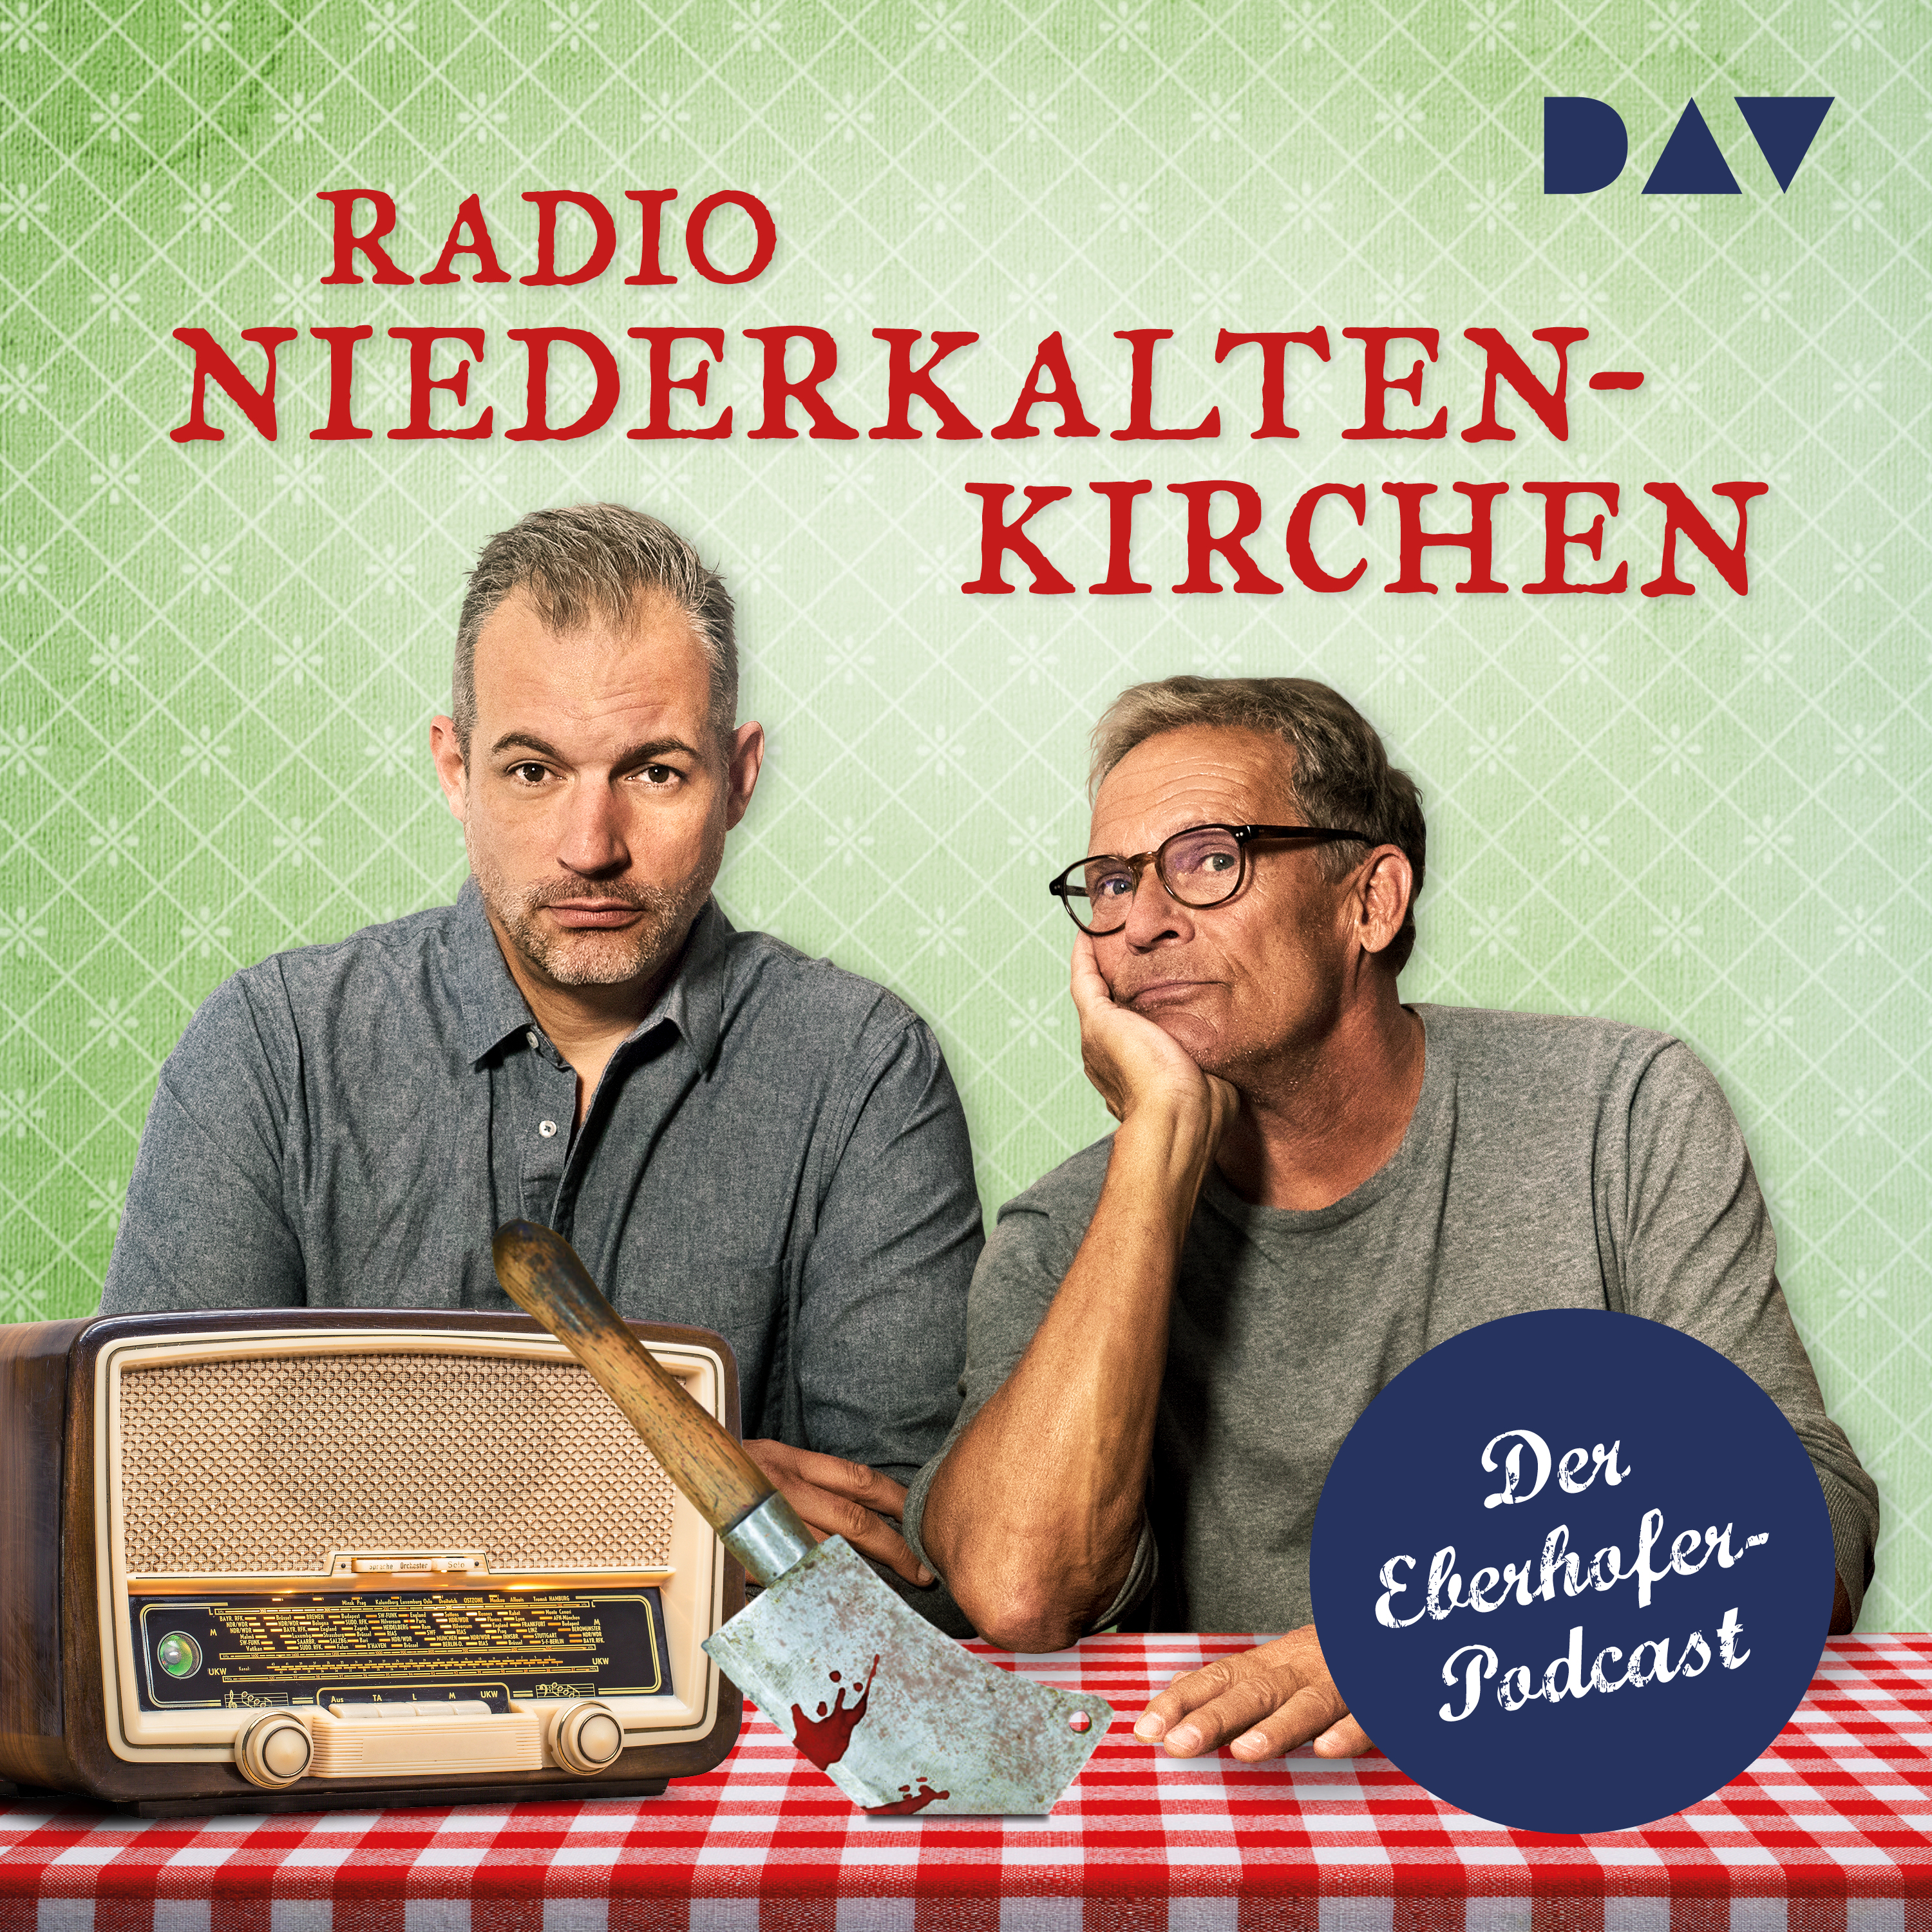 DAV startet eigenen Podcast »Radio Niederkaltenkirchen – Der Eberhofer Podcast« am 16.09.2021